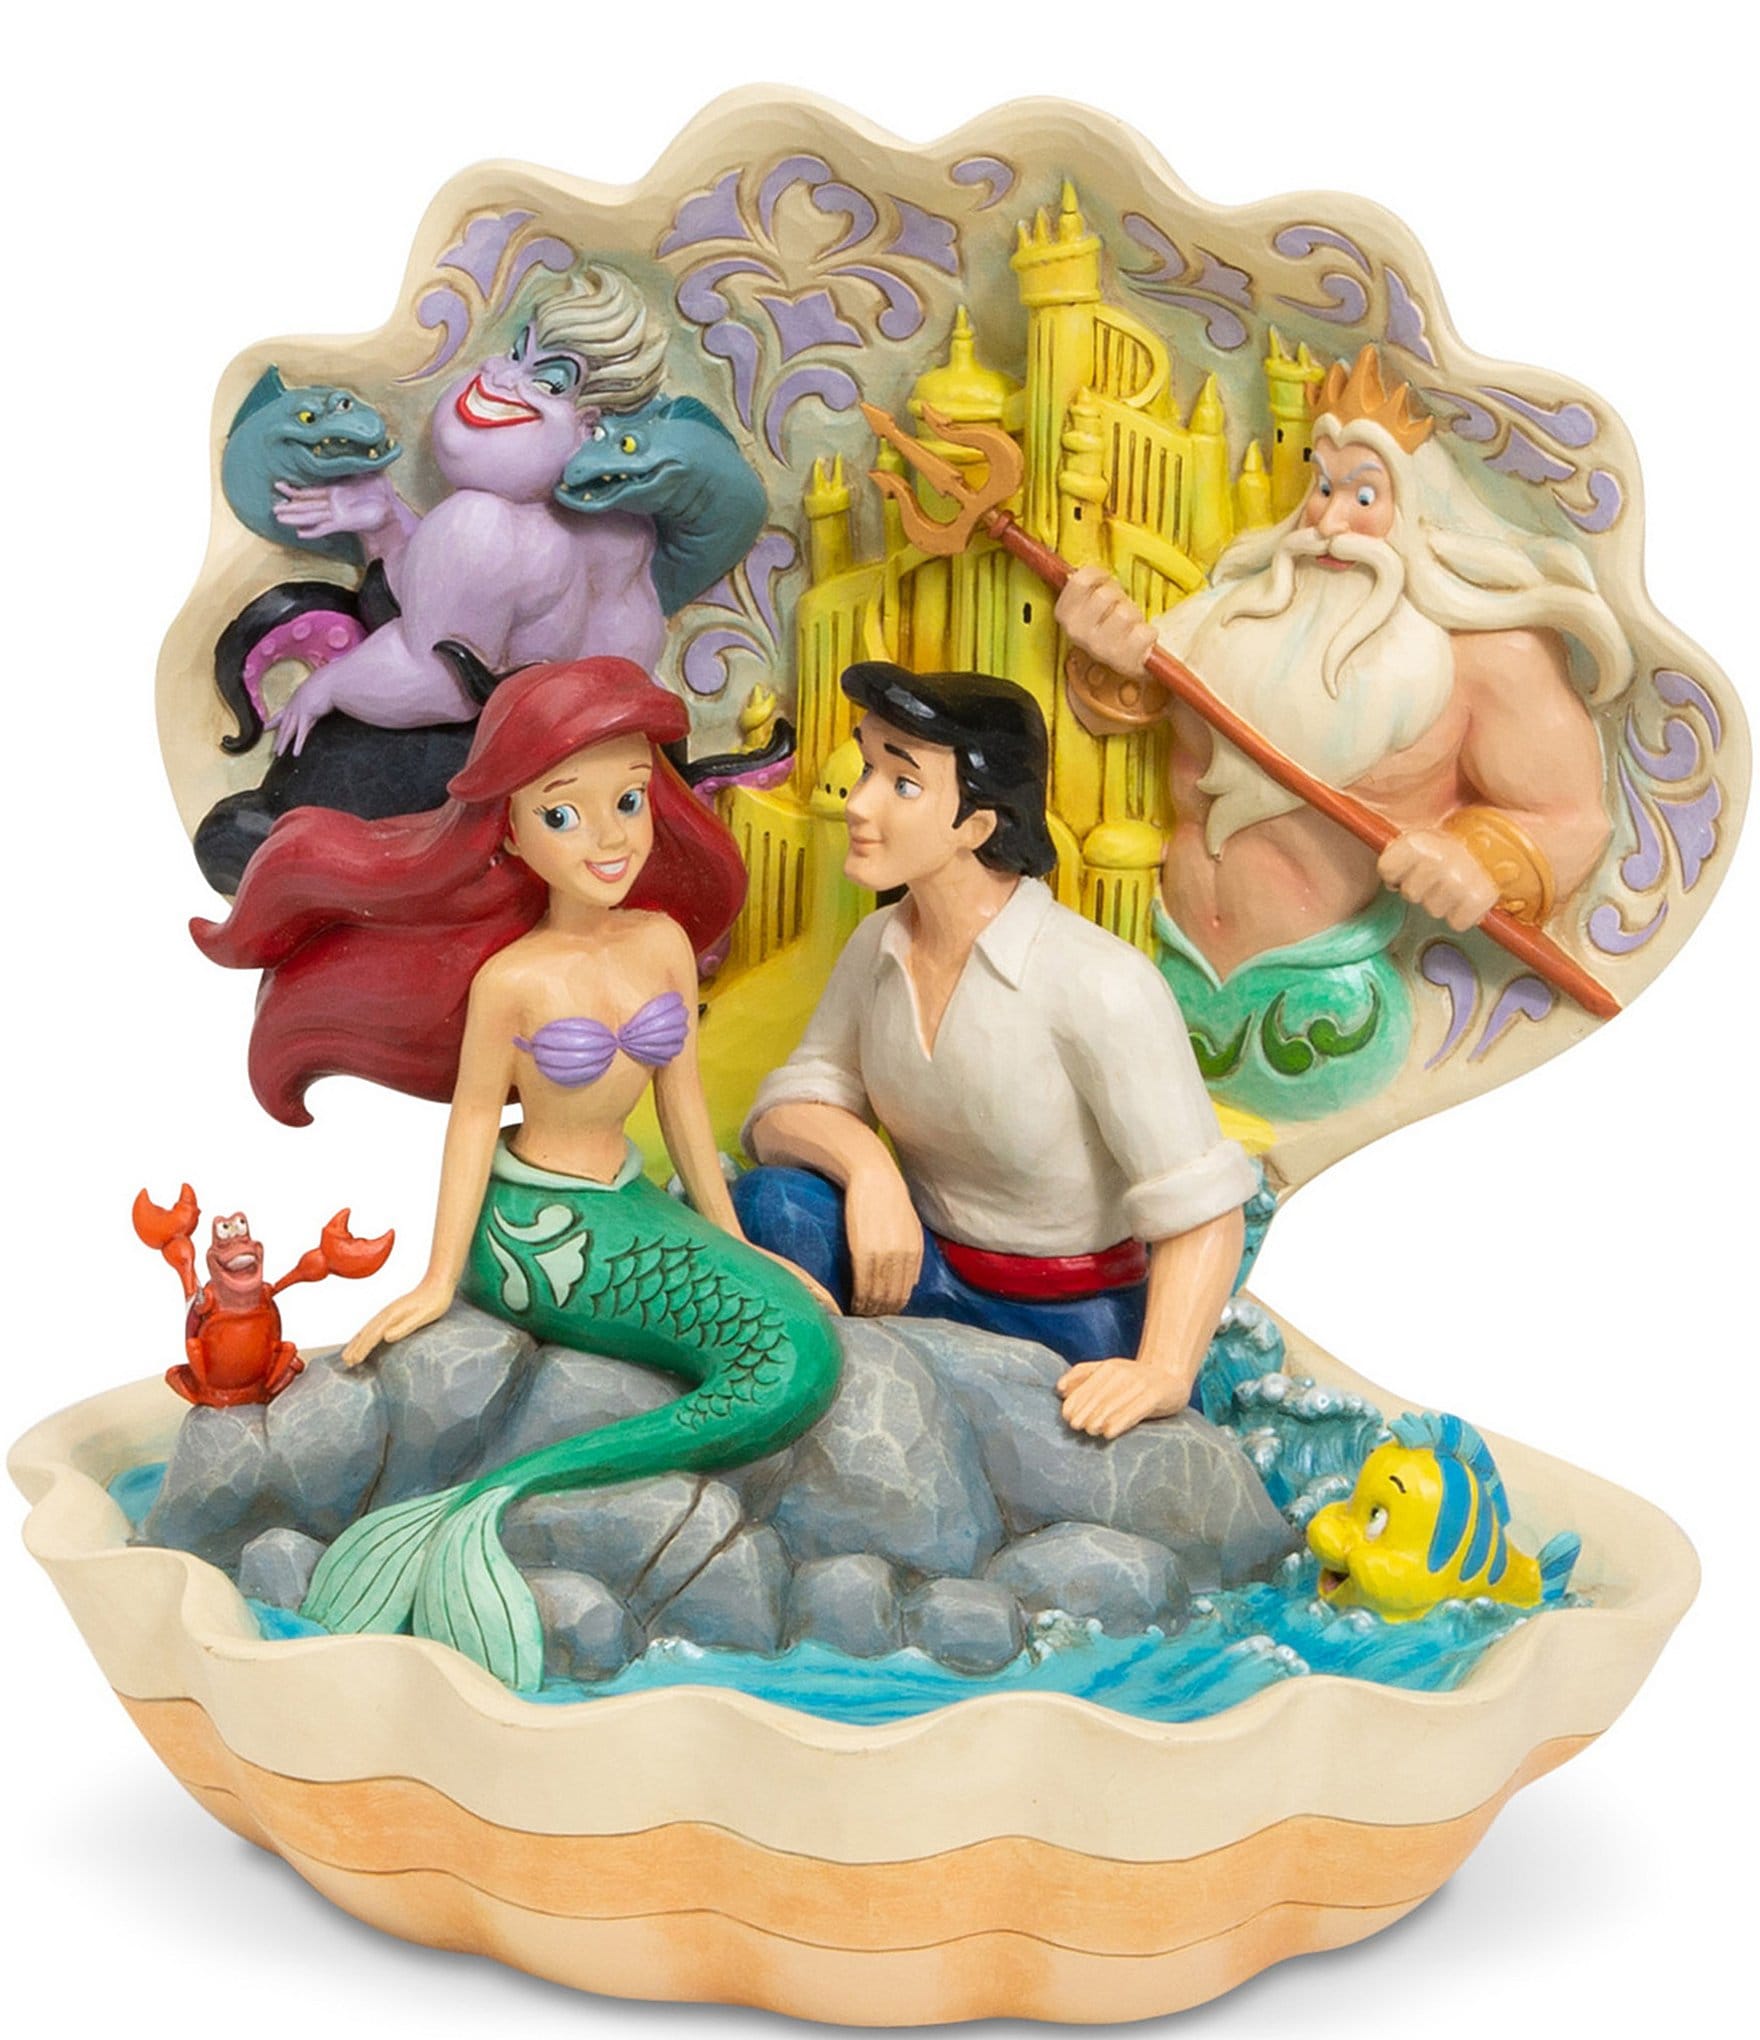 Disney Showcase Key: Collection Flash! 22 Nouvelles figurines Disney  Traditions de Jim Shore annoncées!